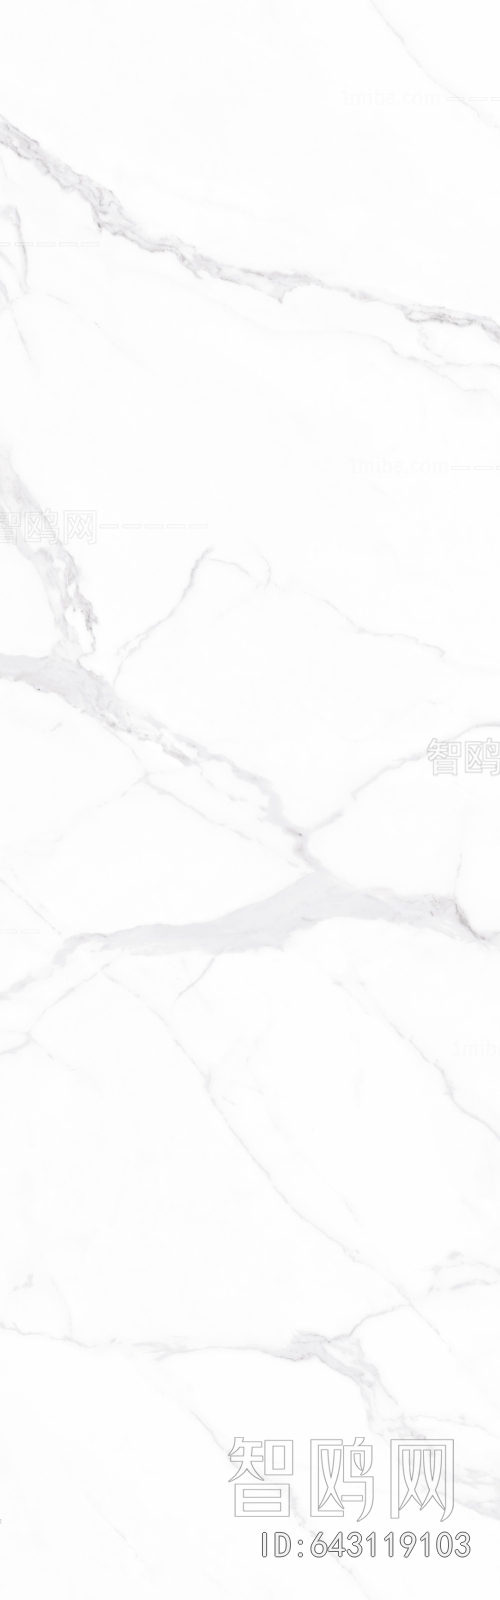 卡拉拉雪山白瓷砖大理石